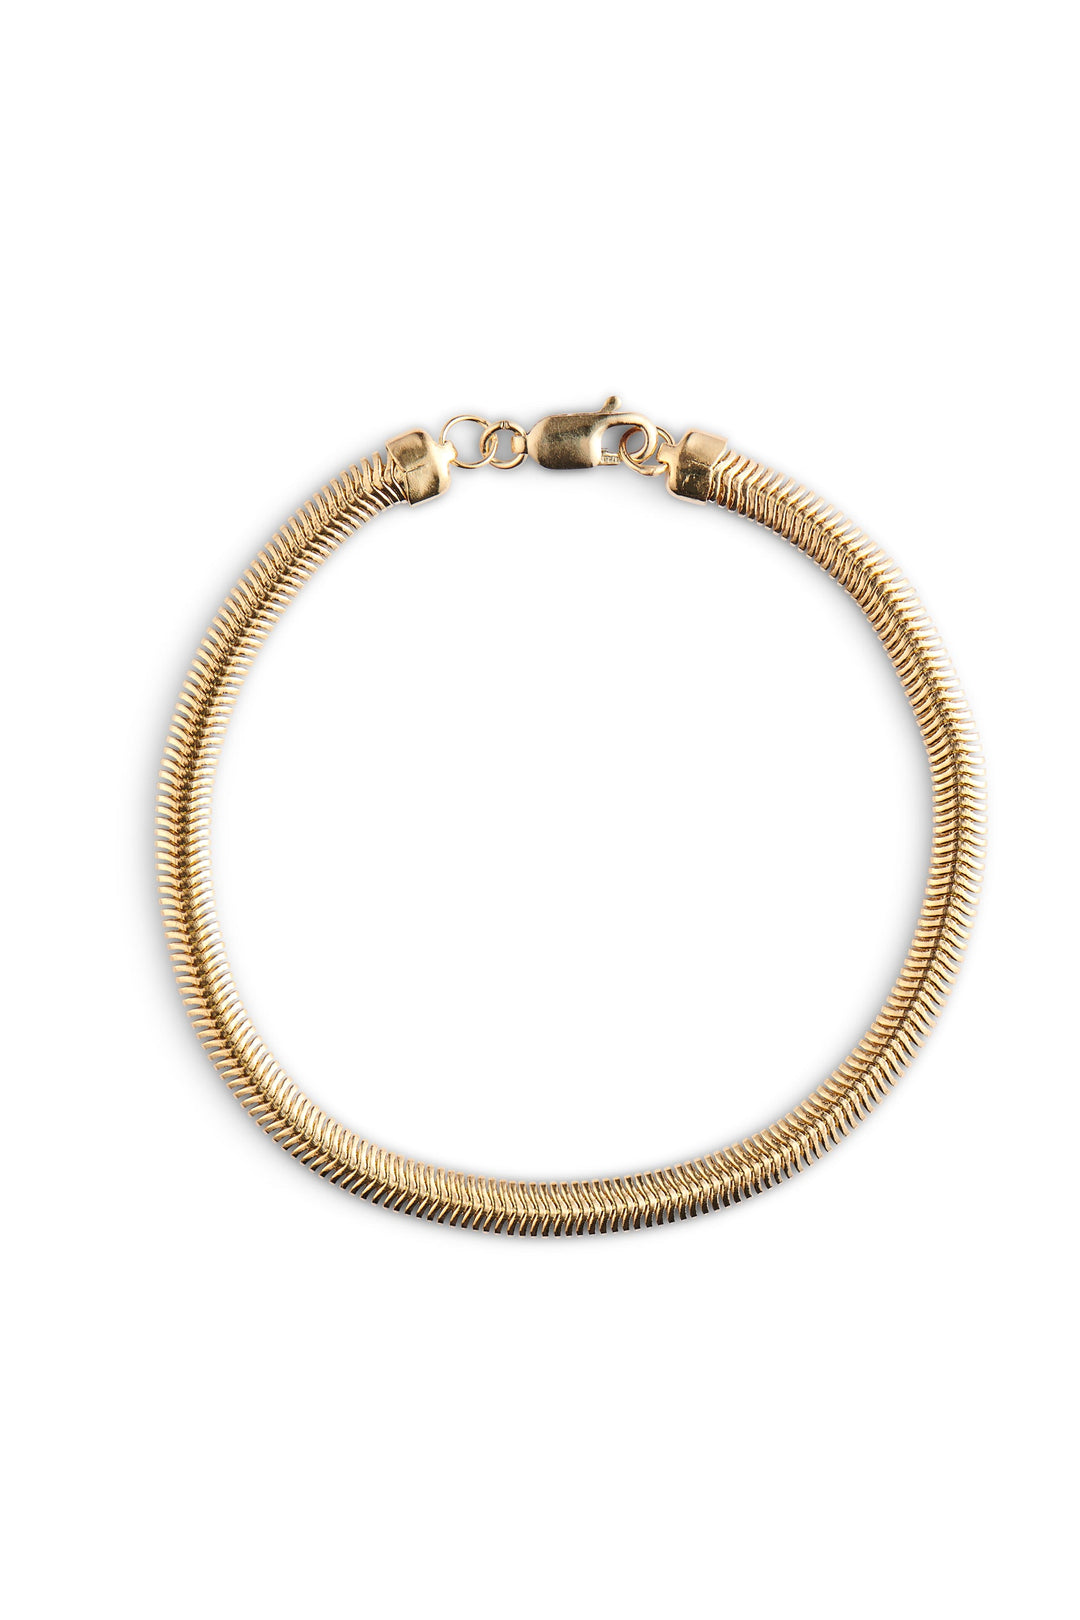 Snake Herringbone Bracelet 18kt Gold Fill